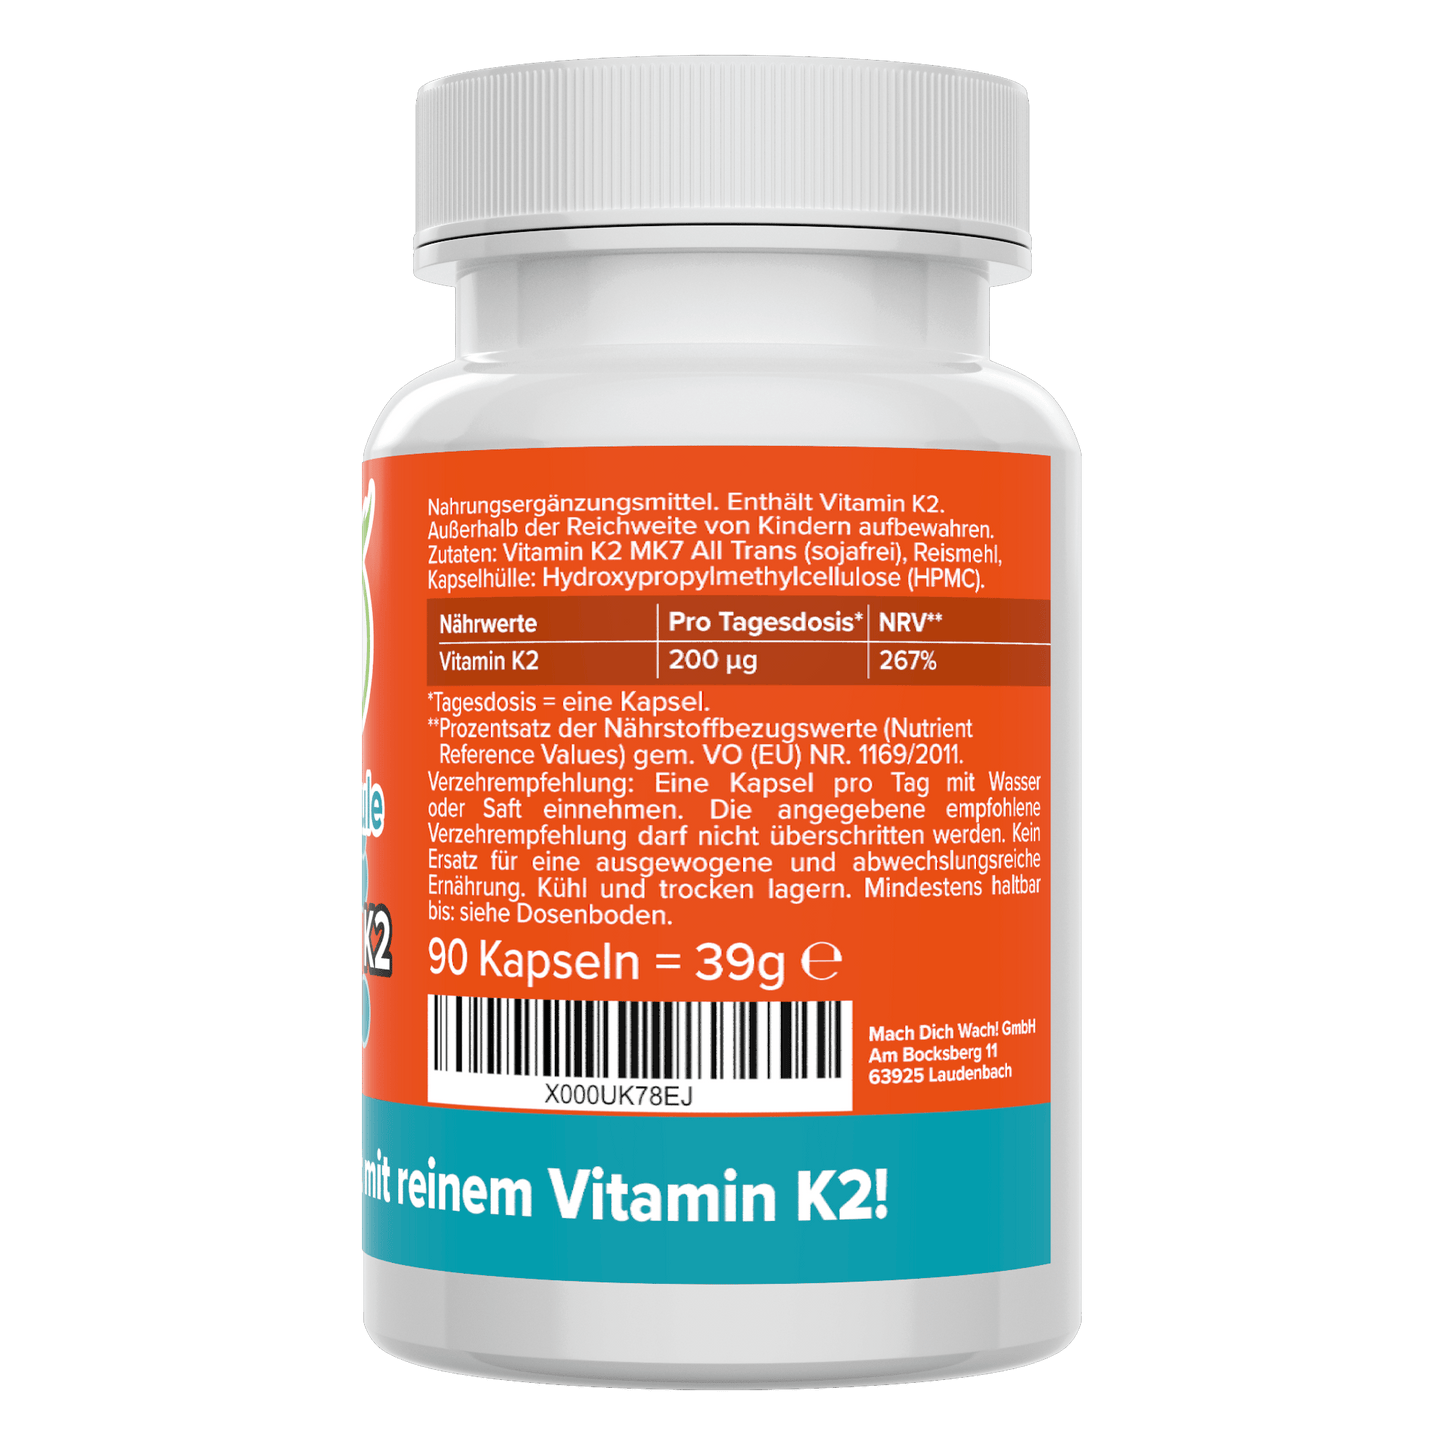 Vitamin K2 Kapseln